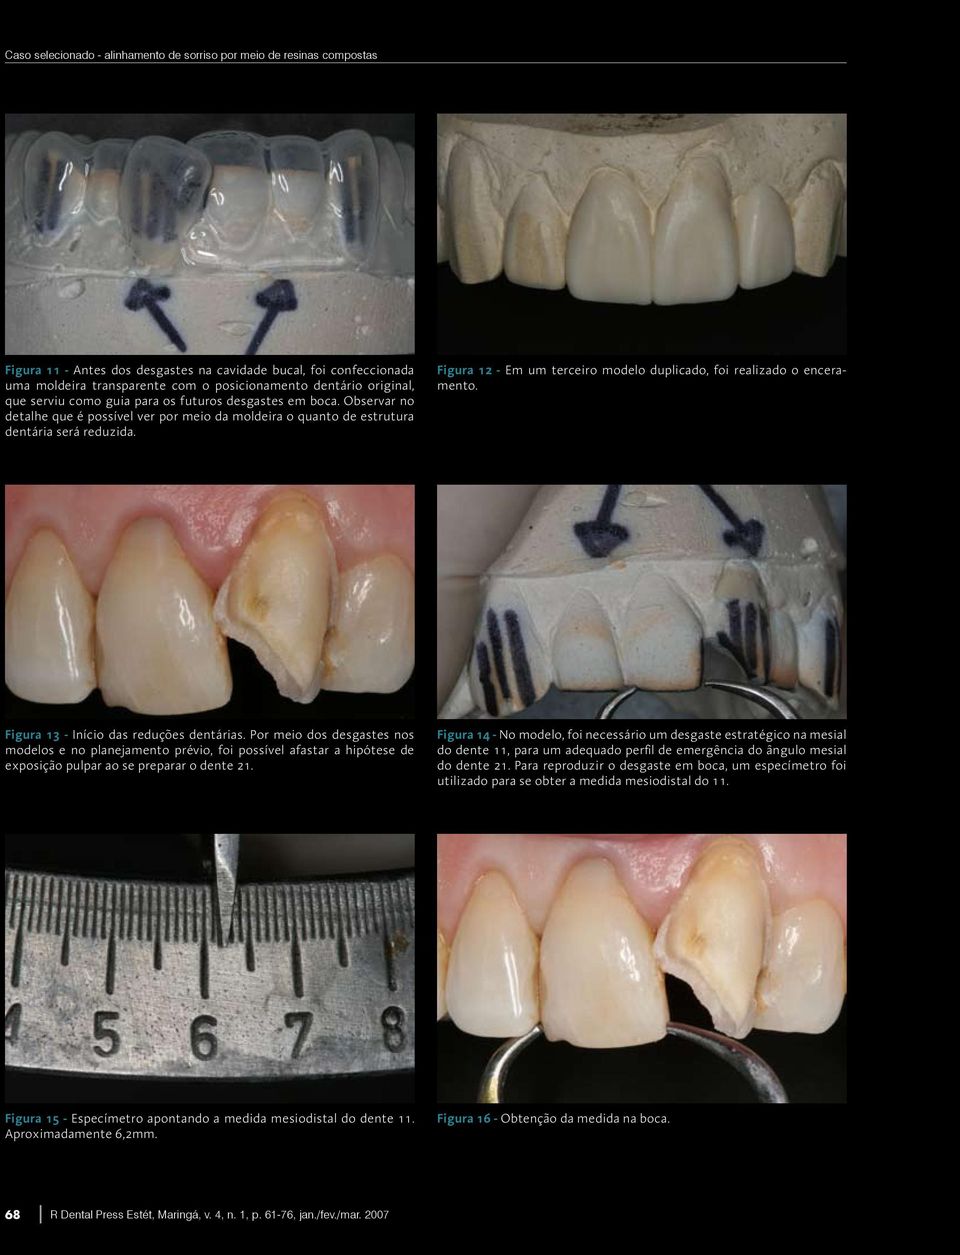 Figura 12 - Em um terceiro modelo duplicado, foi realizado o enceramento. Figura 13 - Início das reduções dentárias.